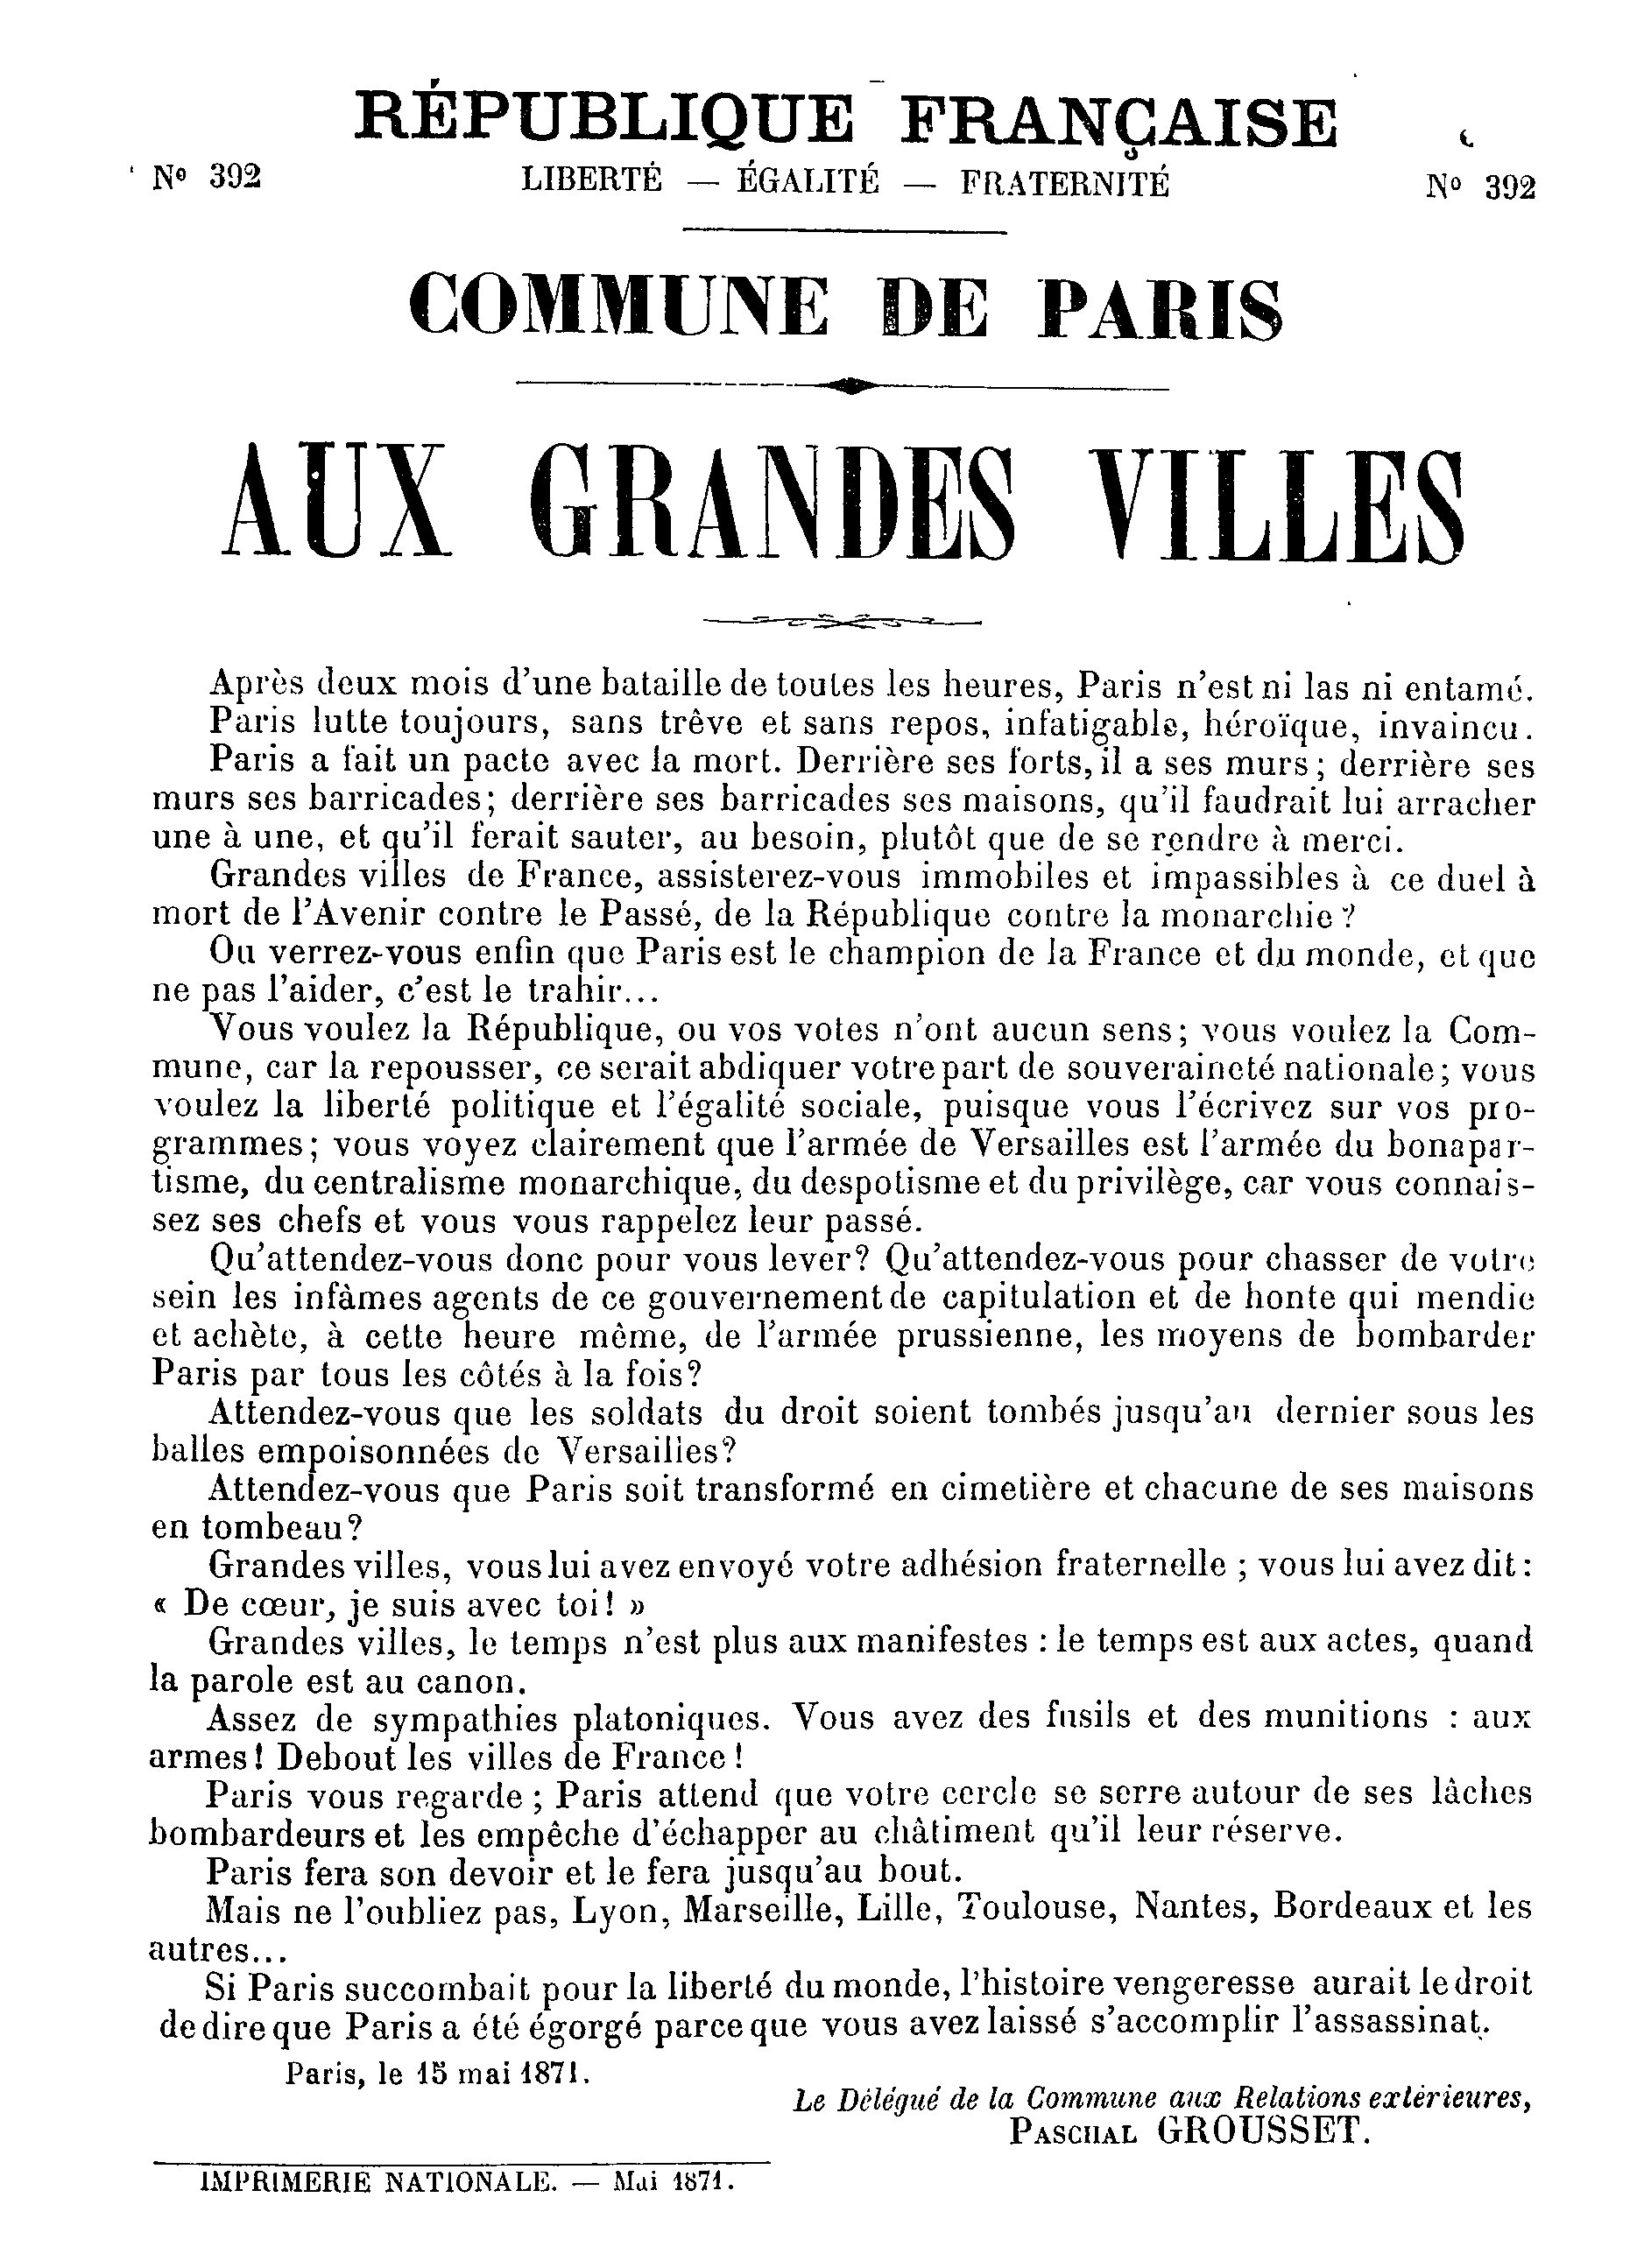 Affiche de la Commune 1871 : Appel aux grandes villes 15 mai 1871